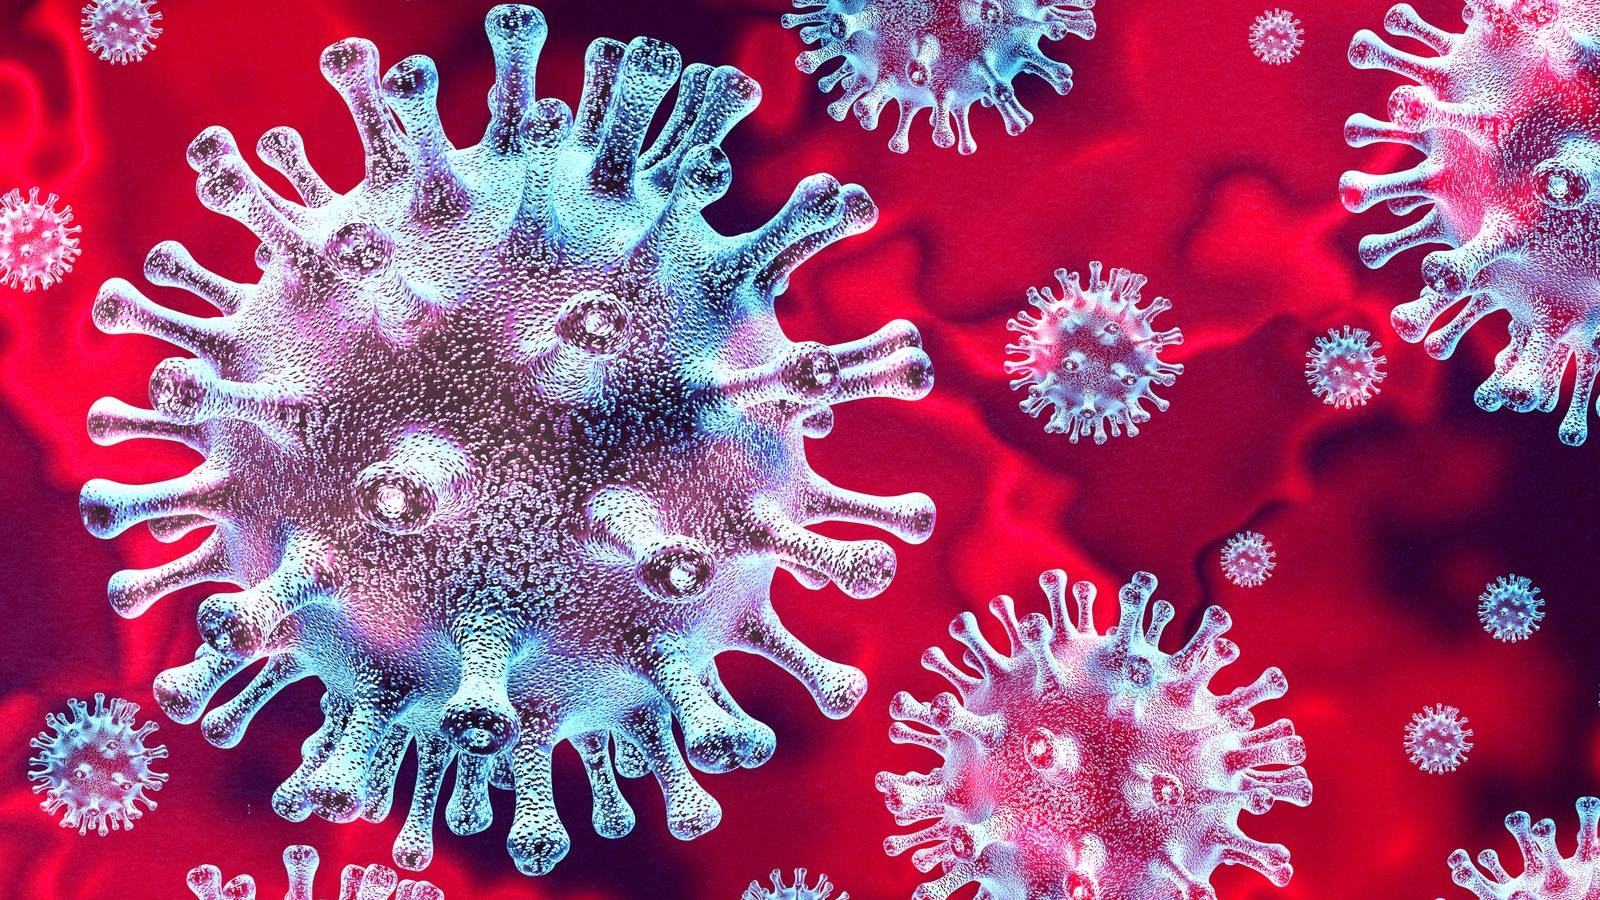 Información sobre coronavirus Rumania dsu 29 de febrero